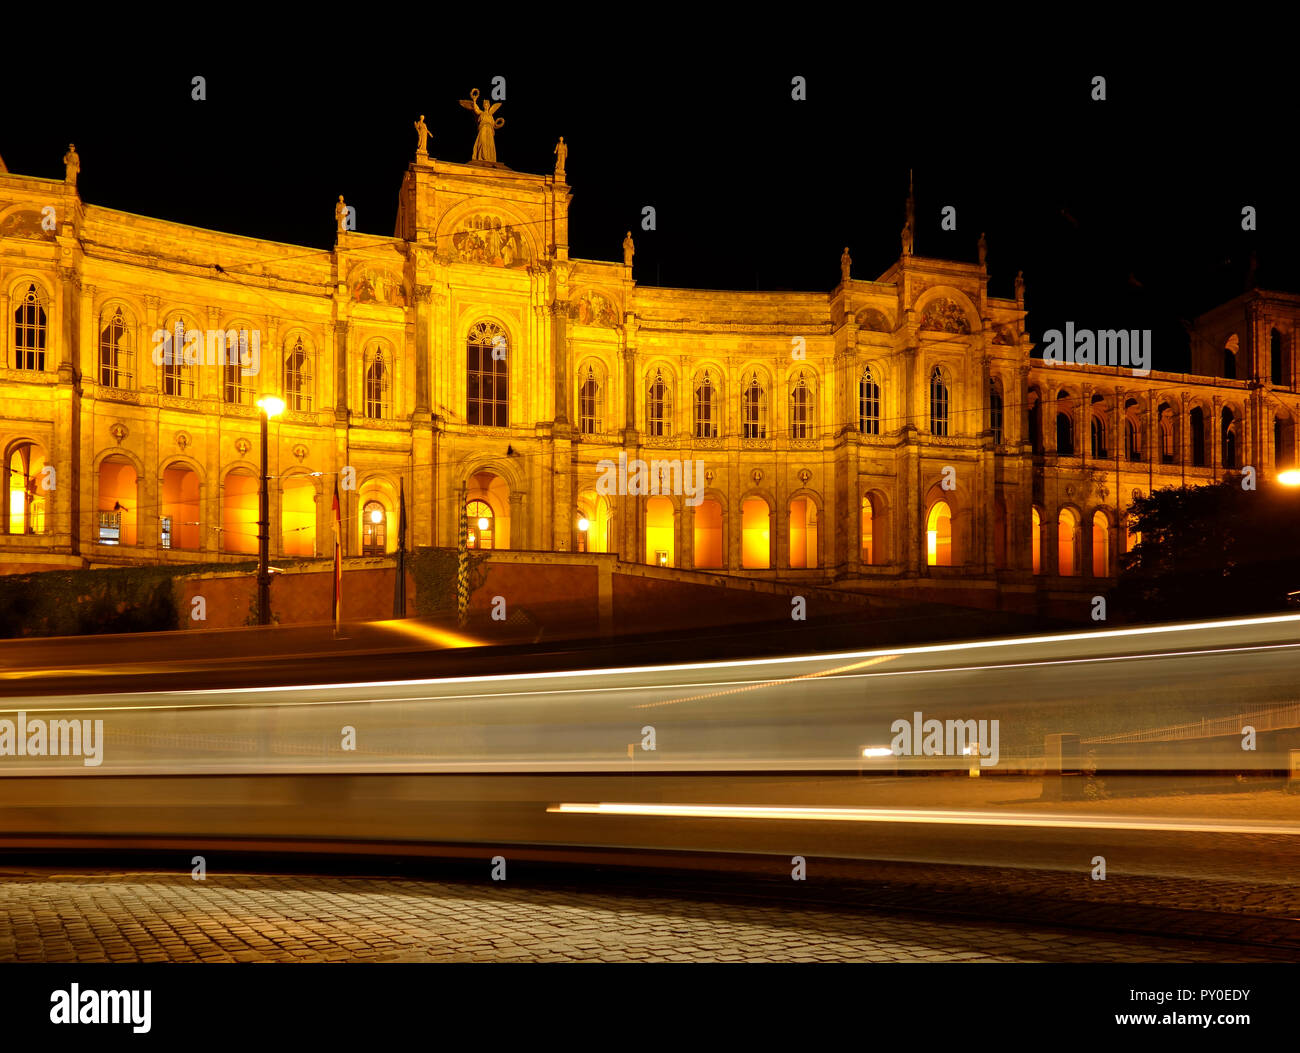 Das historische Gebäude Maximillianeum in München, Stadt in Bayern, Teil von Deutschland bei Nacht mit Lichtstrahlen von einem vorbeifahrenden Straßenbahn durch lange Belichtung Stockfoto